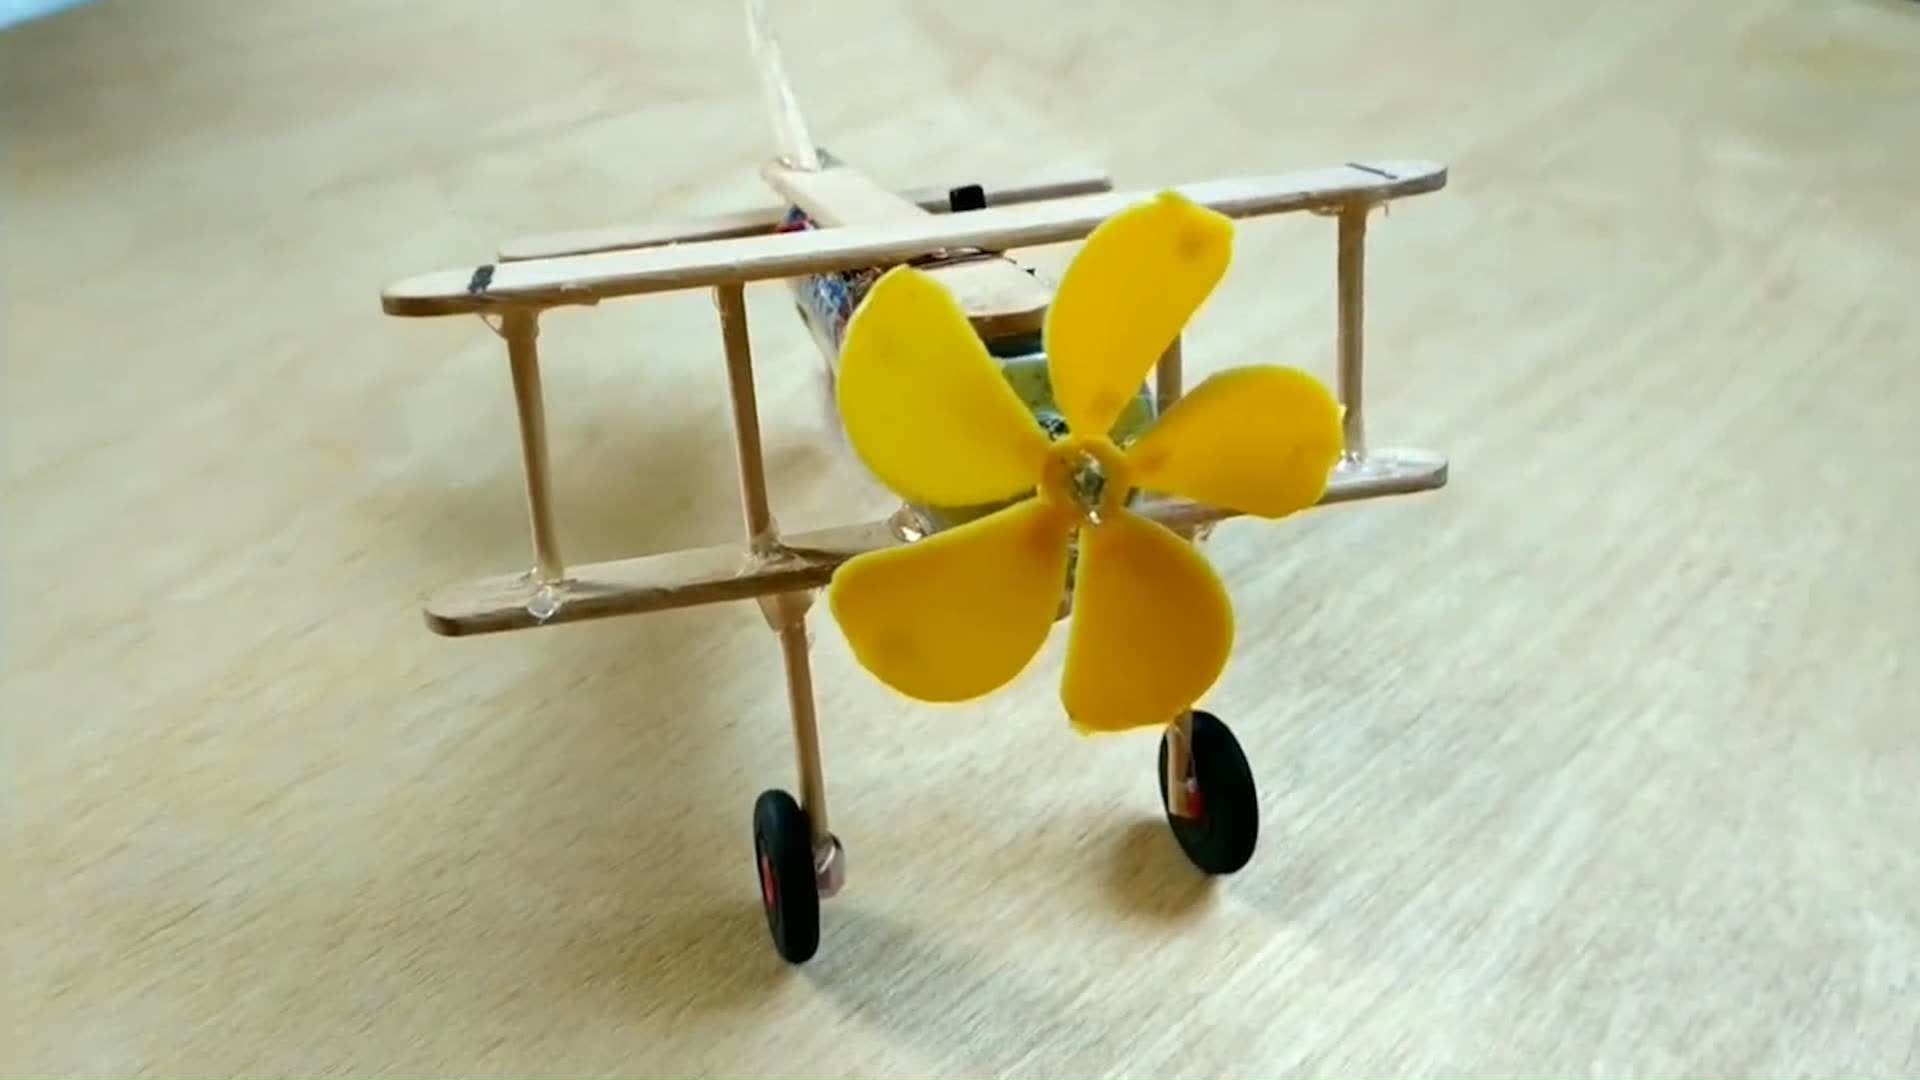 用冰糕棍和牙签做成的一架小型滑翔机,能飞哦?